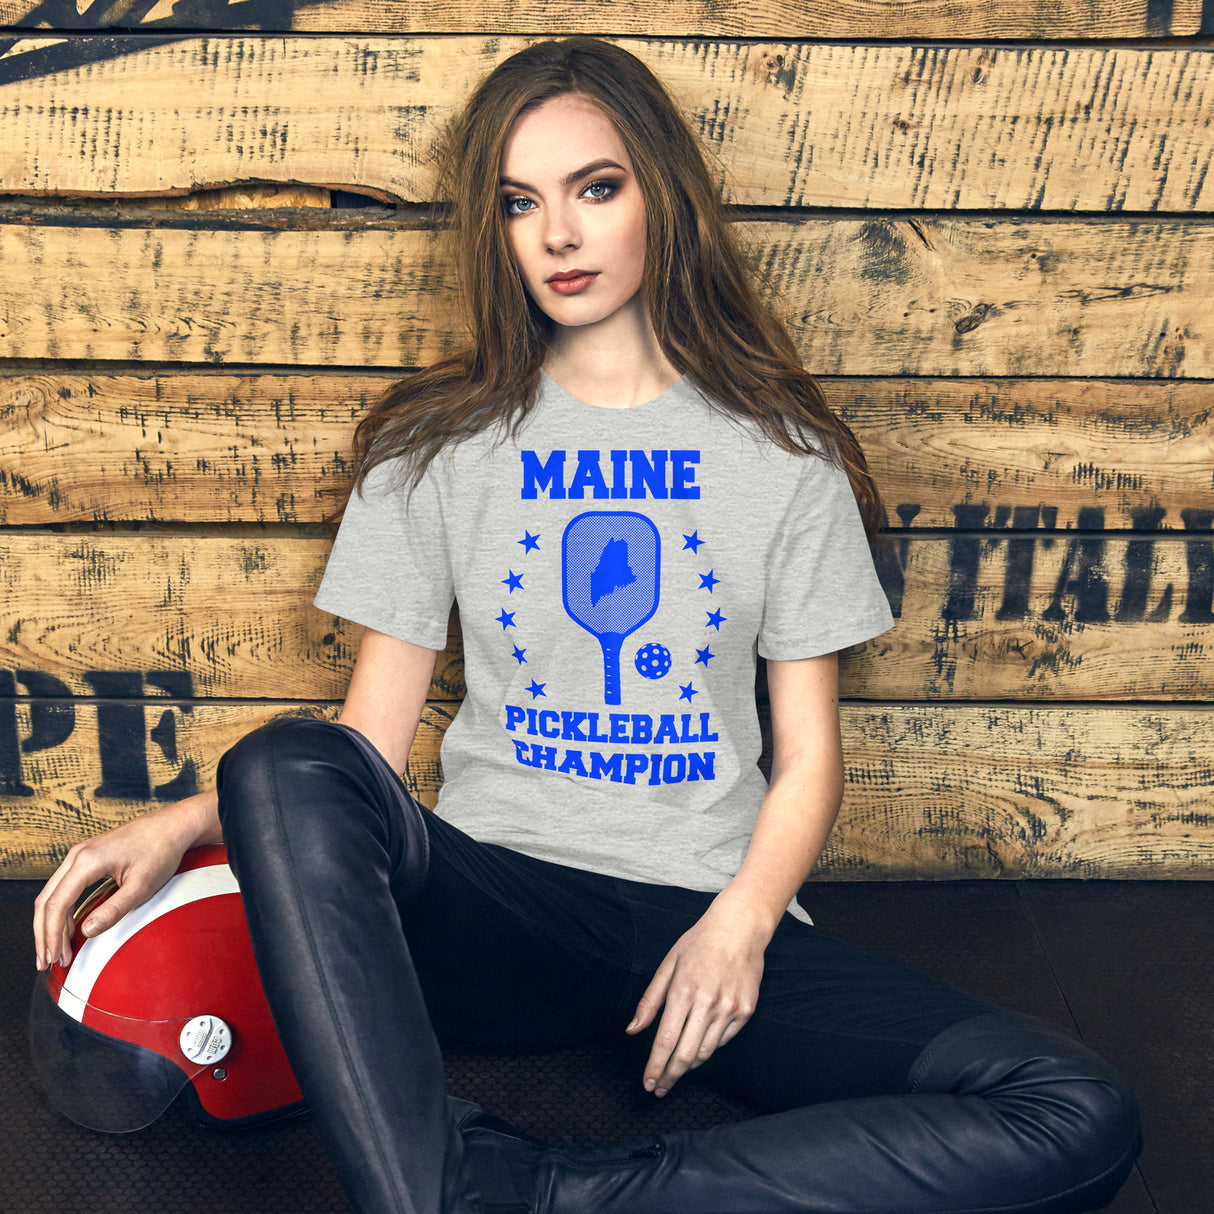 Maine Pickleball Champion Women's Shirt